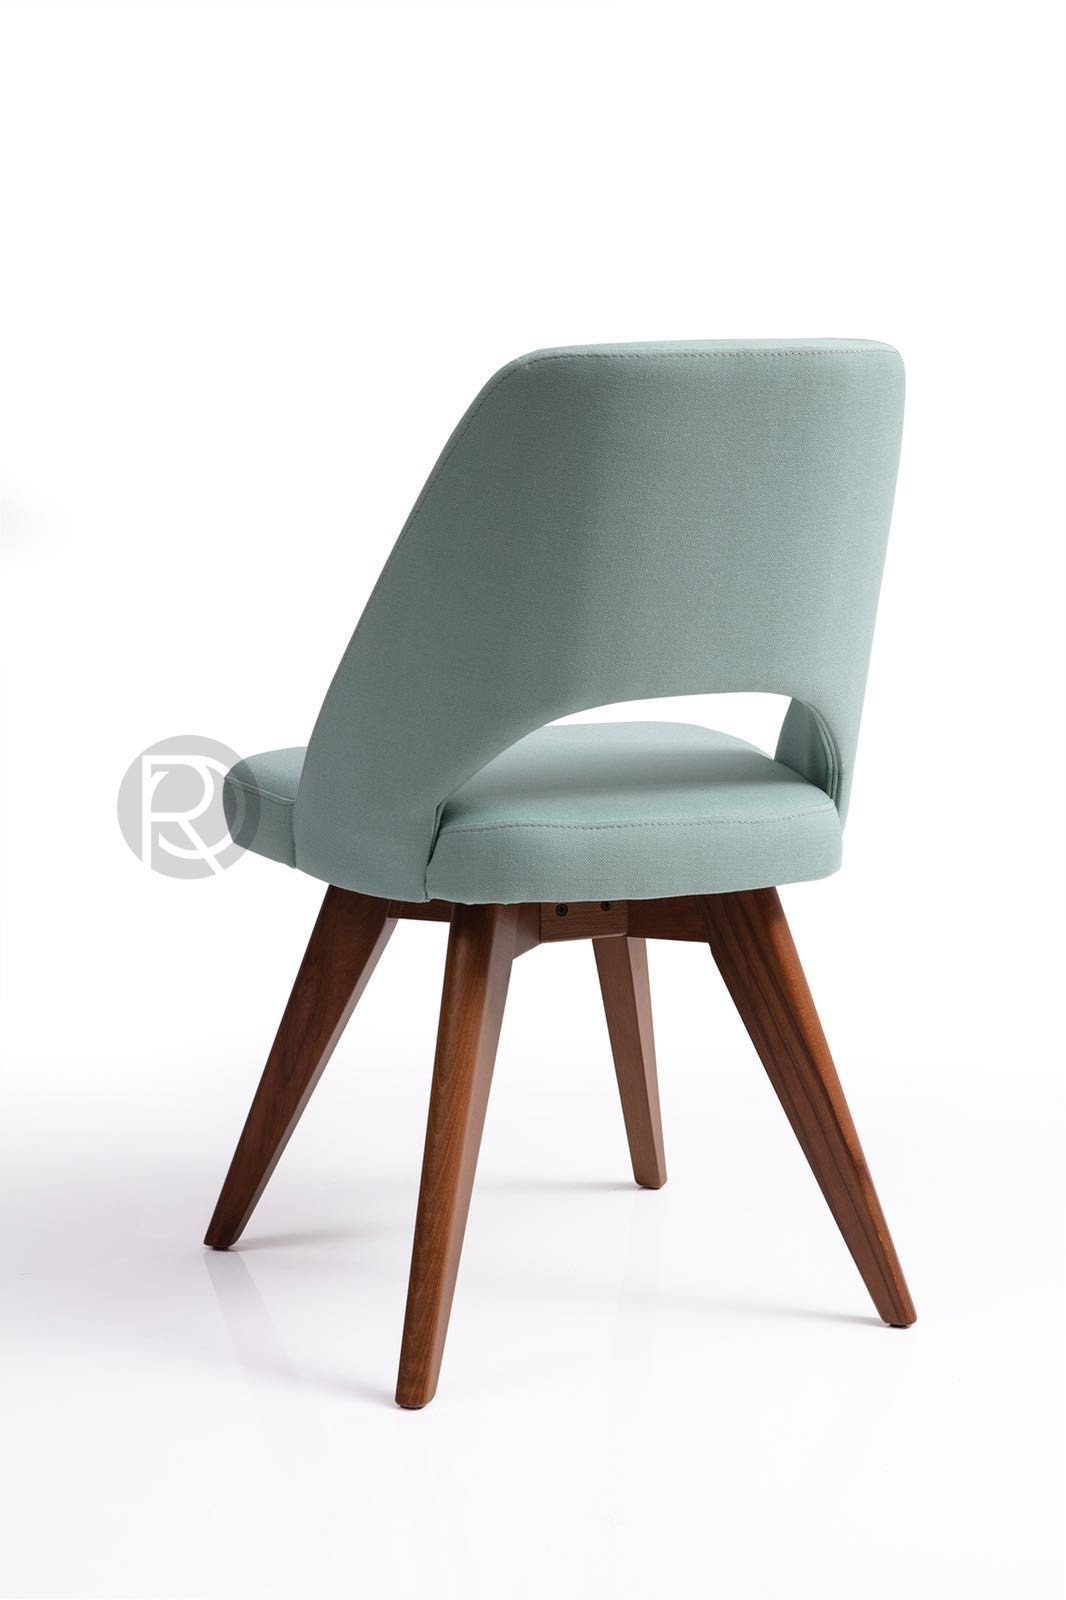 COVHE chair by Romatti